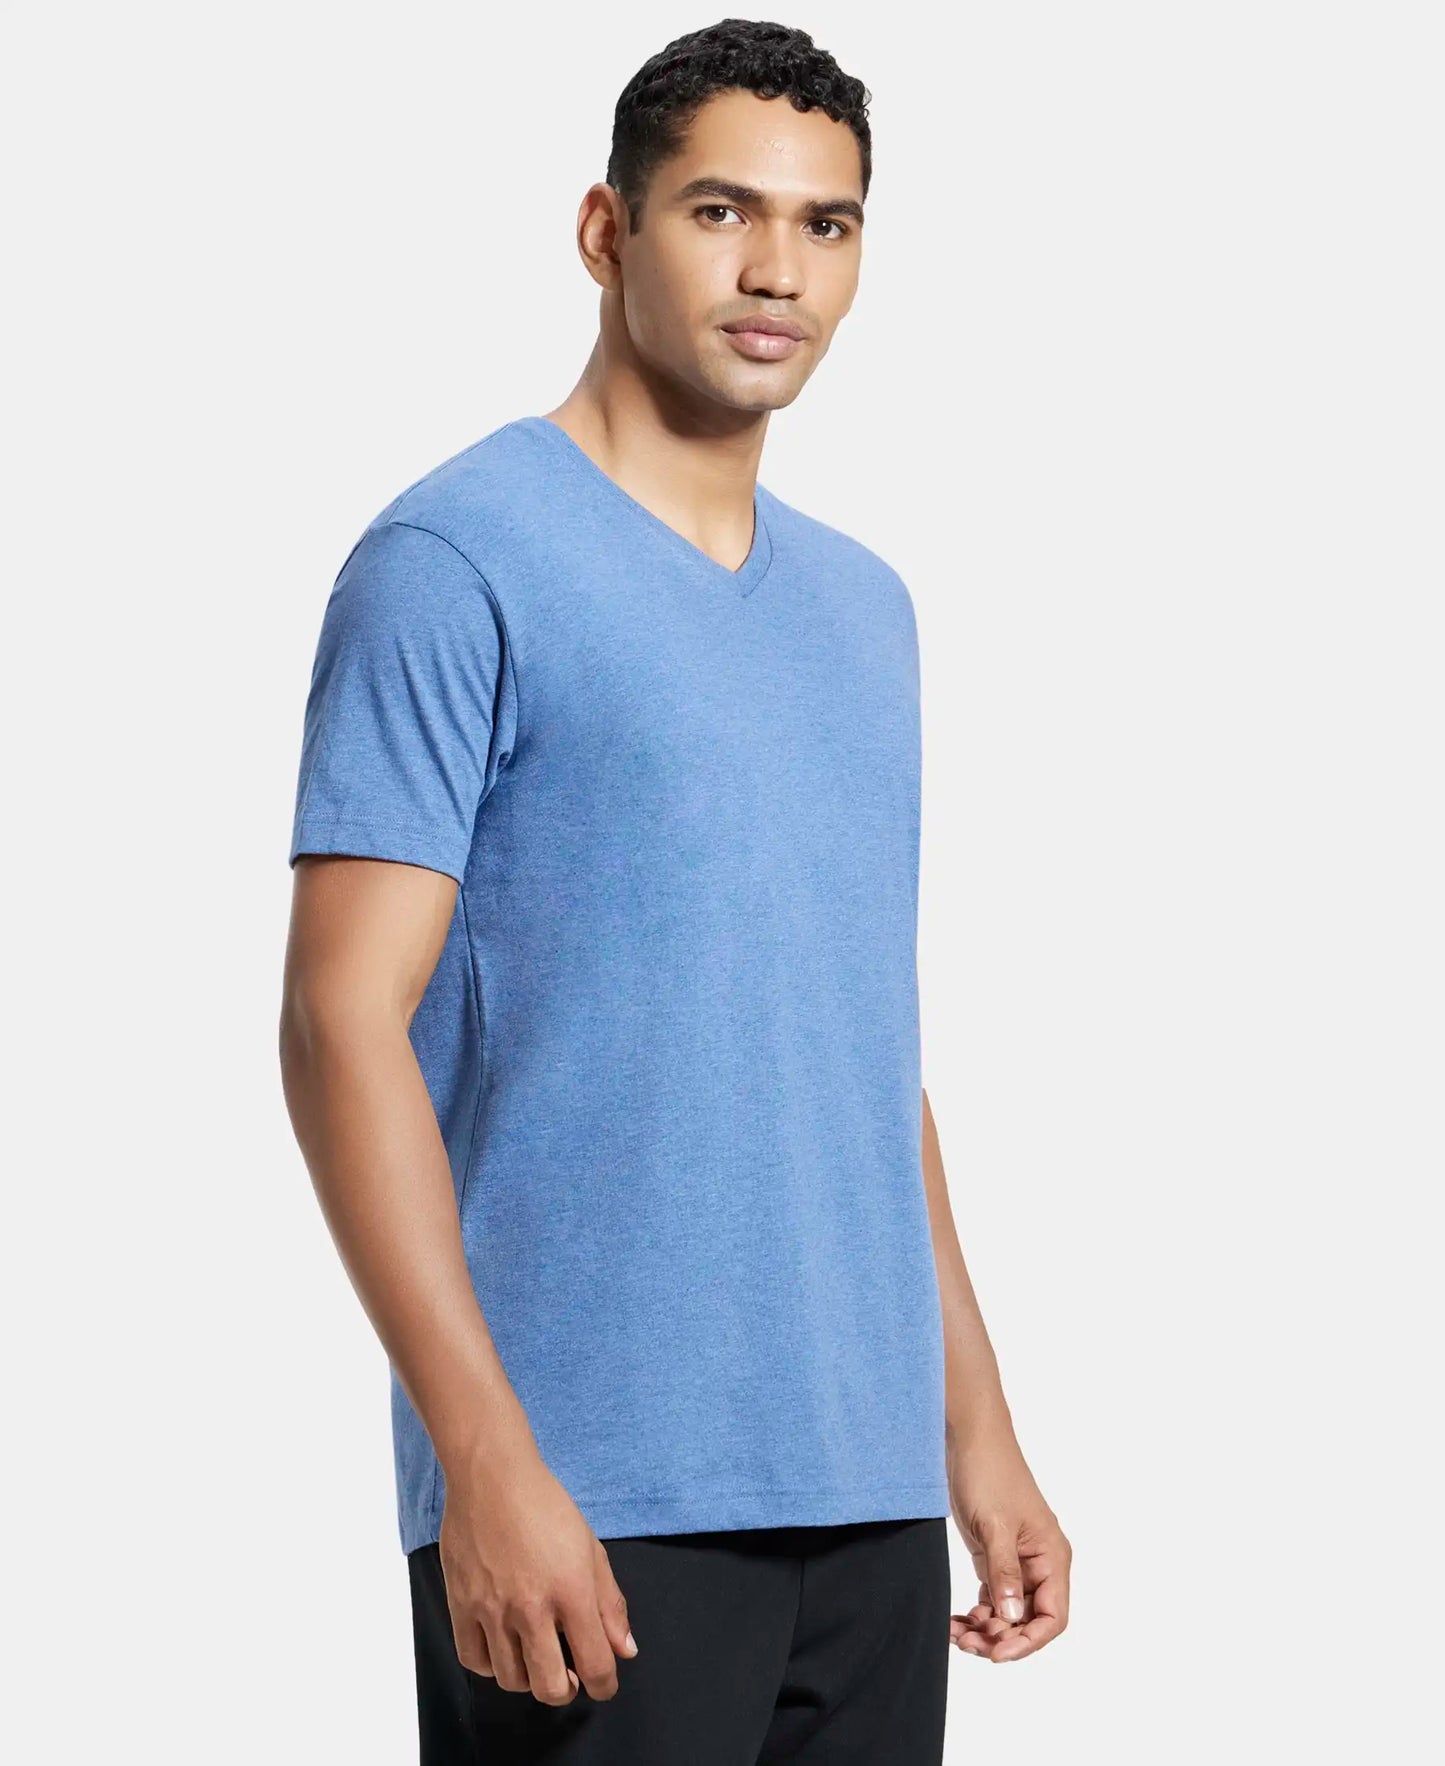 Super Combed Cotton Rich Solid V Neck Half Sleeve T-Shirt  - Light Denim Melange-2